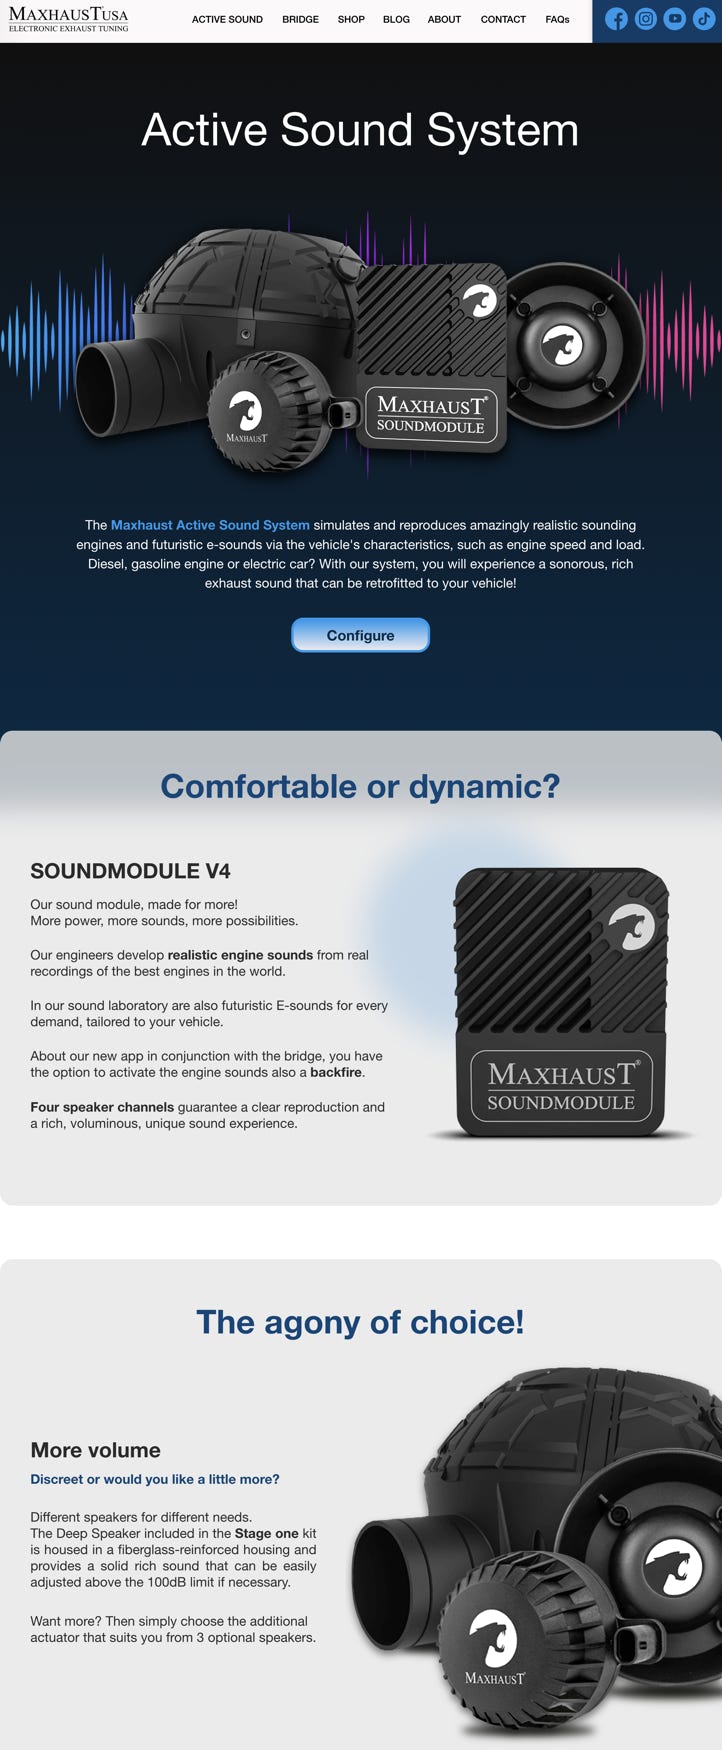 The new Maxhaust USA website